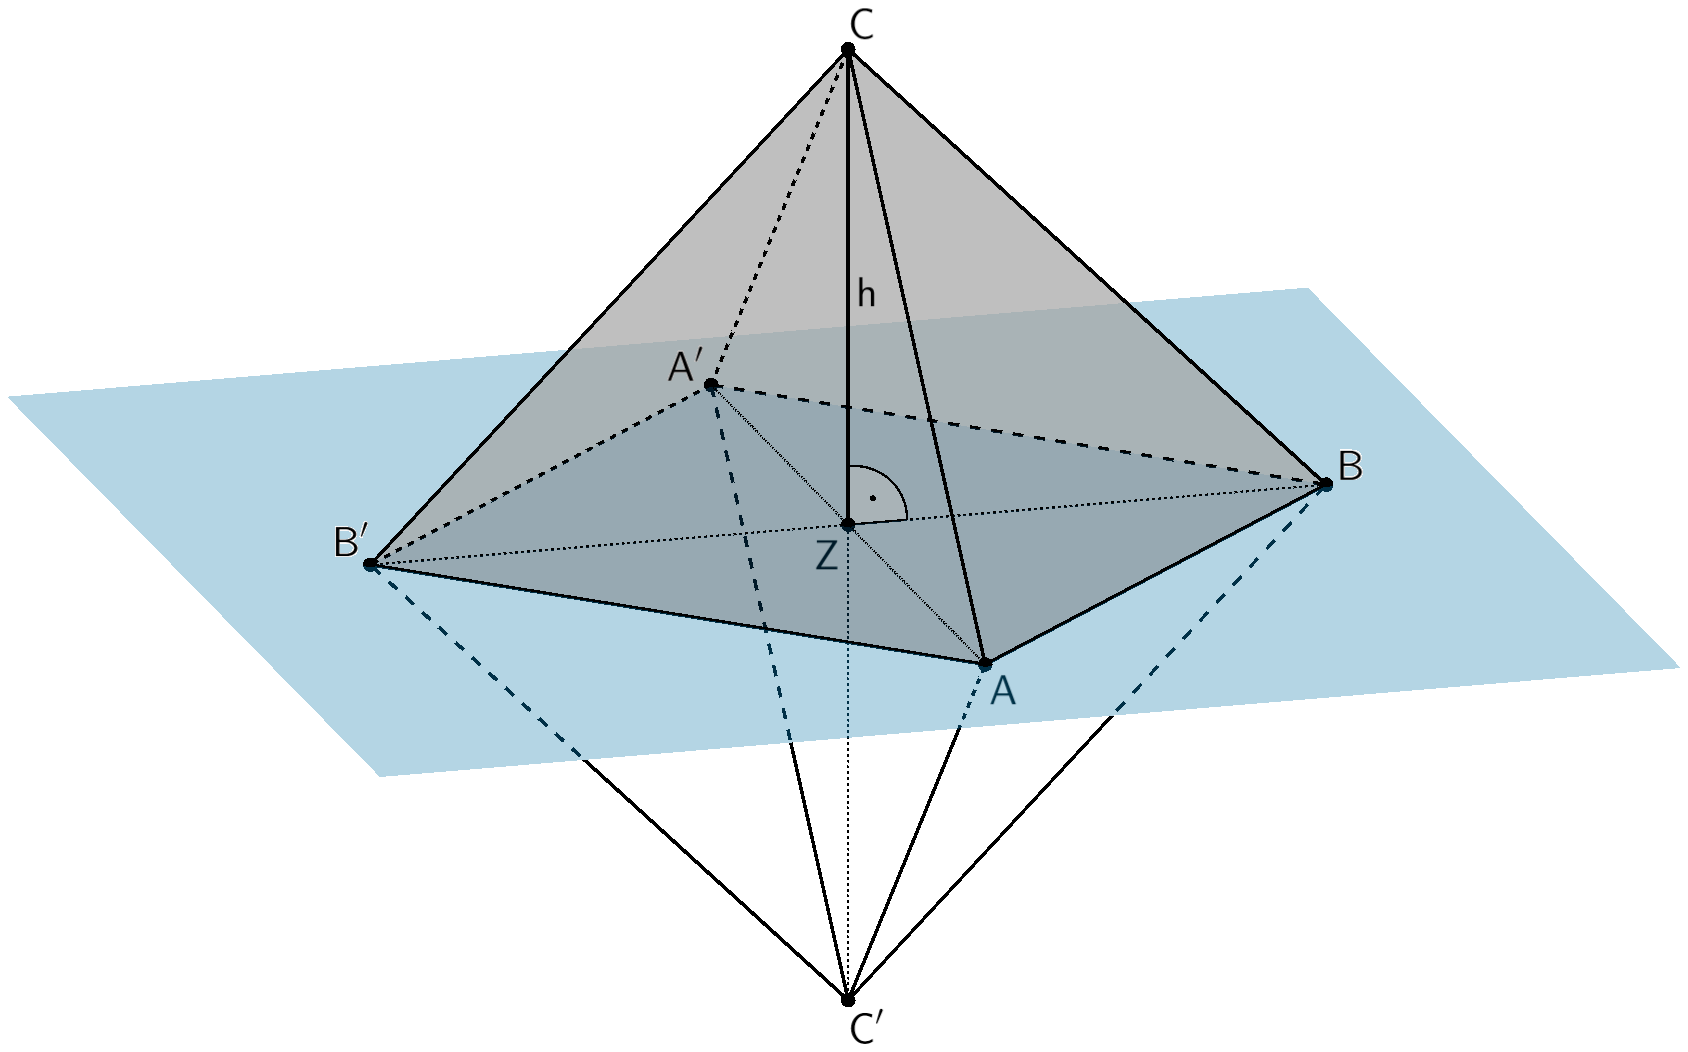 Oktaeder ABA'B'CC', Pyramide ABA'B'C mit Höhe h und Ebene, in der die Punkte A, B und Z liegen